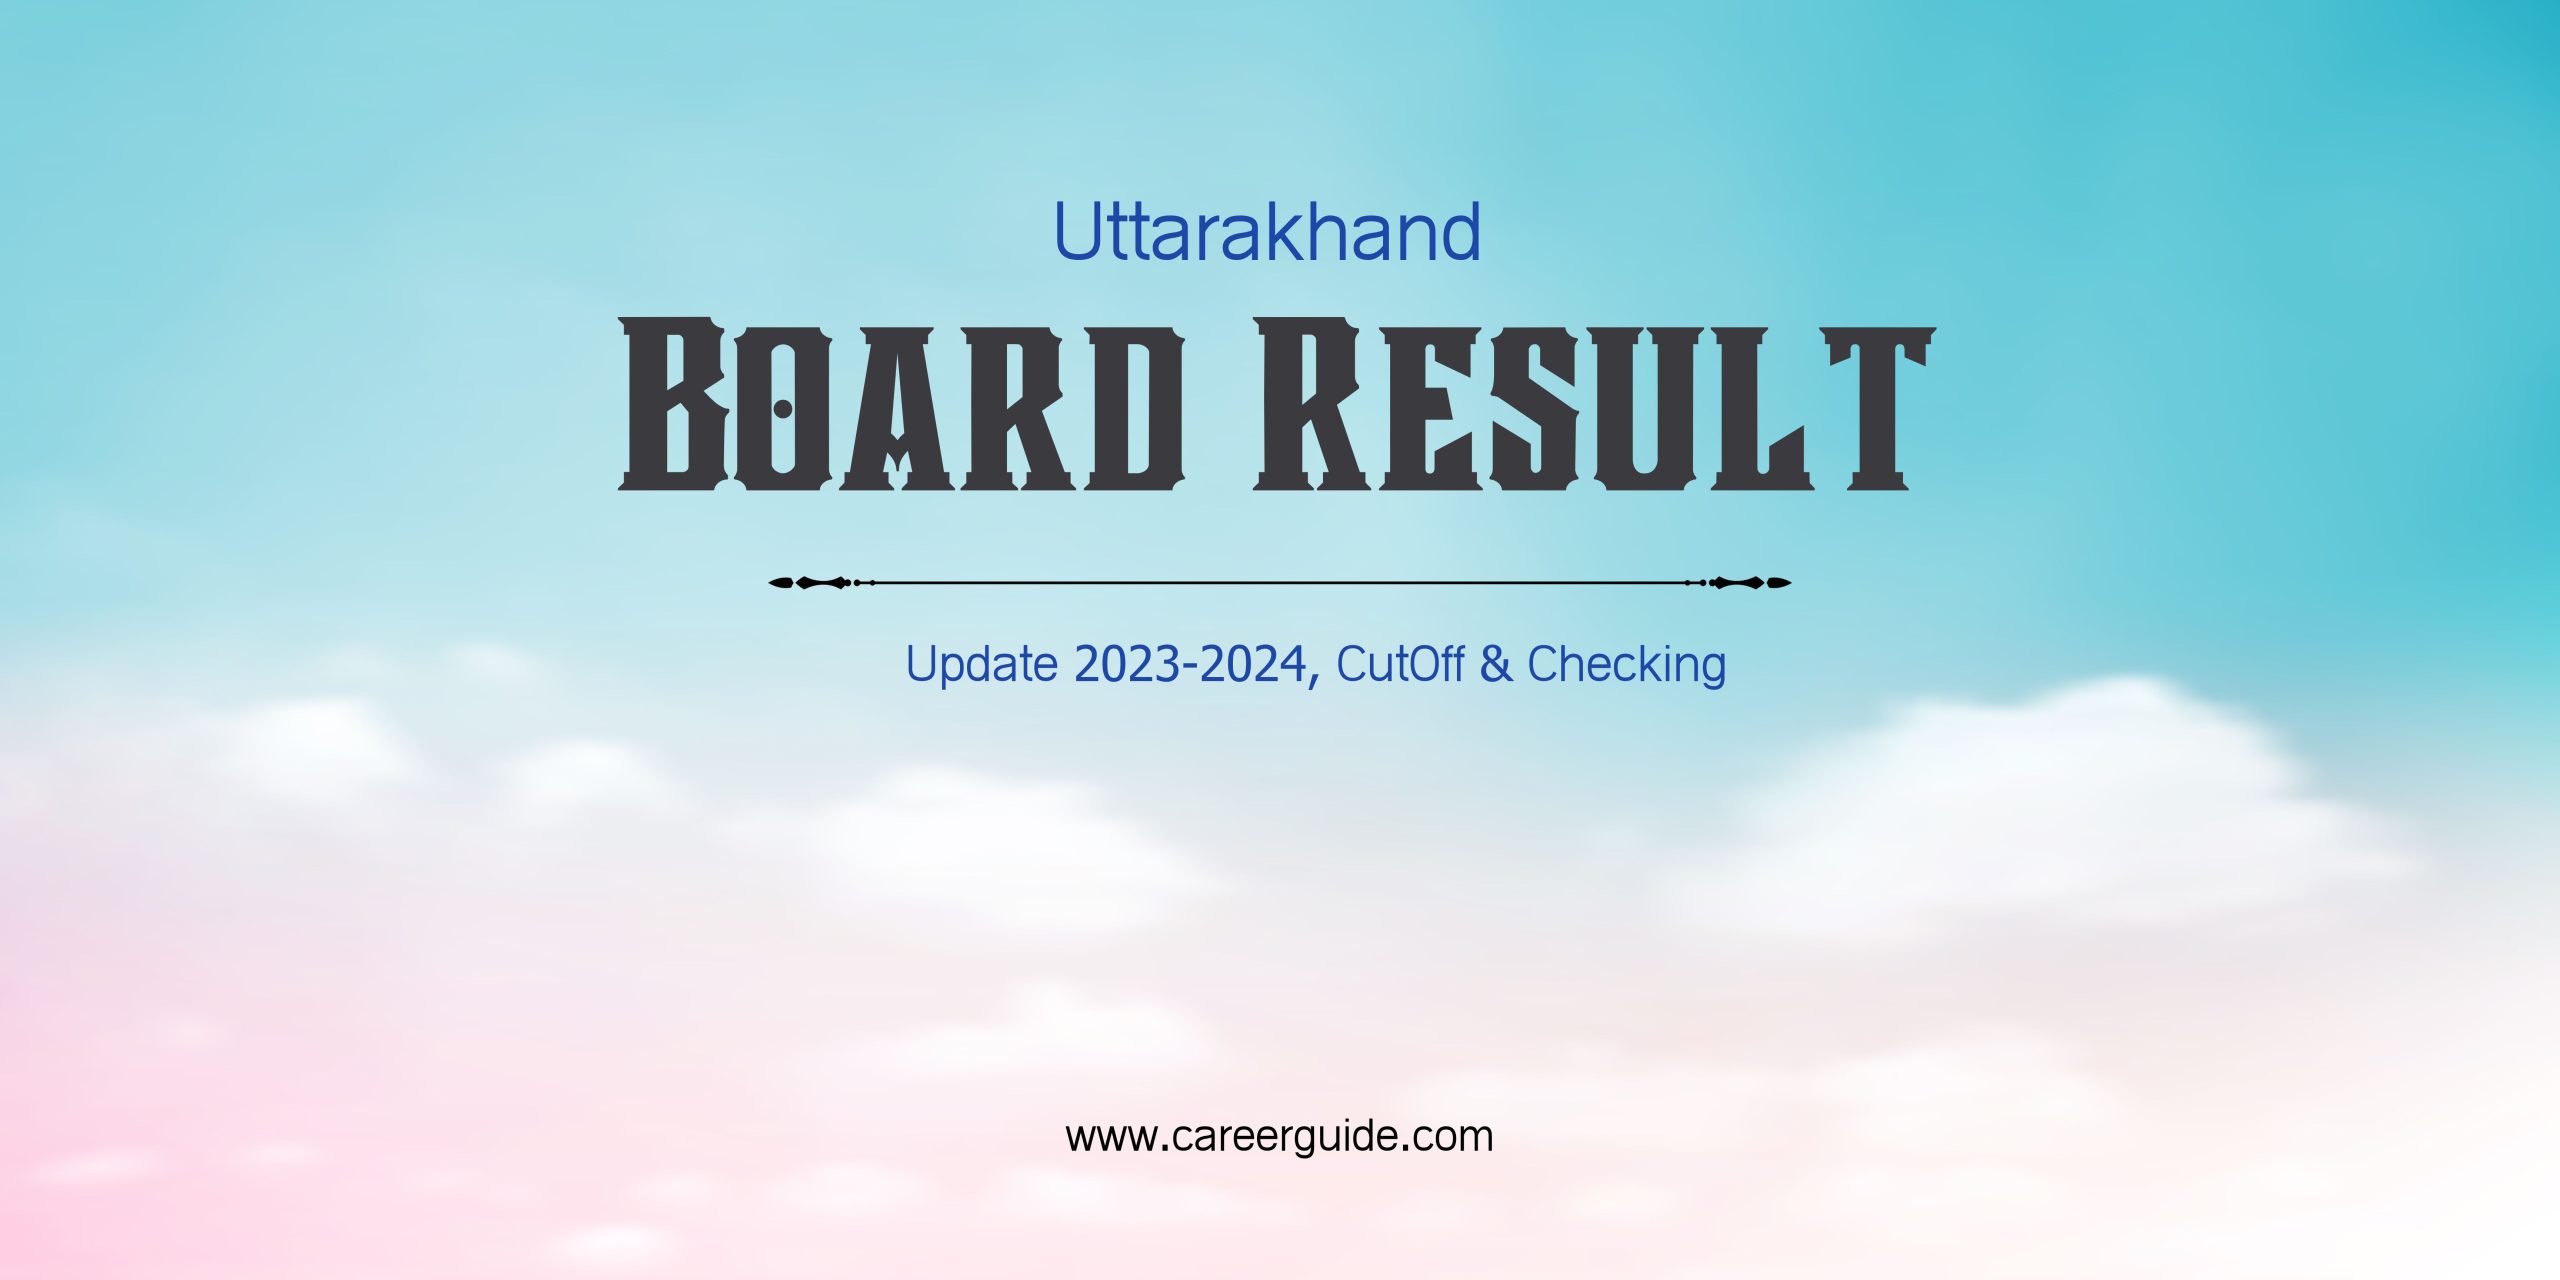 Uttarakhand Board Result